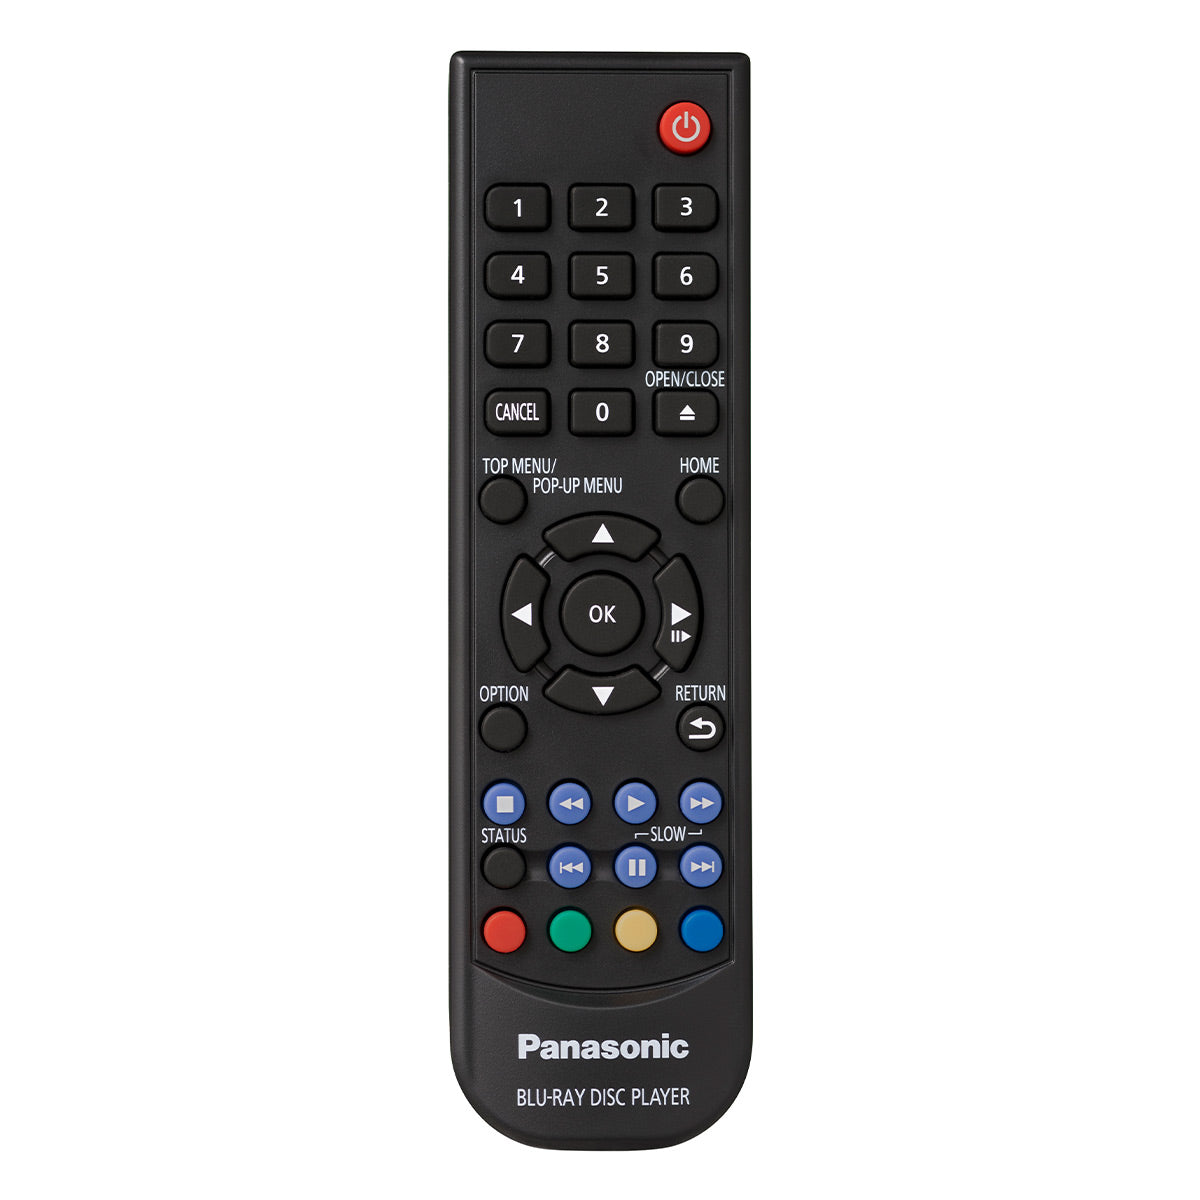 Panasonic DP-UB154P-K 4K Ultra HD DVD/CD/3D Blu-Ray Player with HDR10, Dolby Digital Plus, & Dolby TrueHD